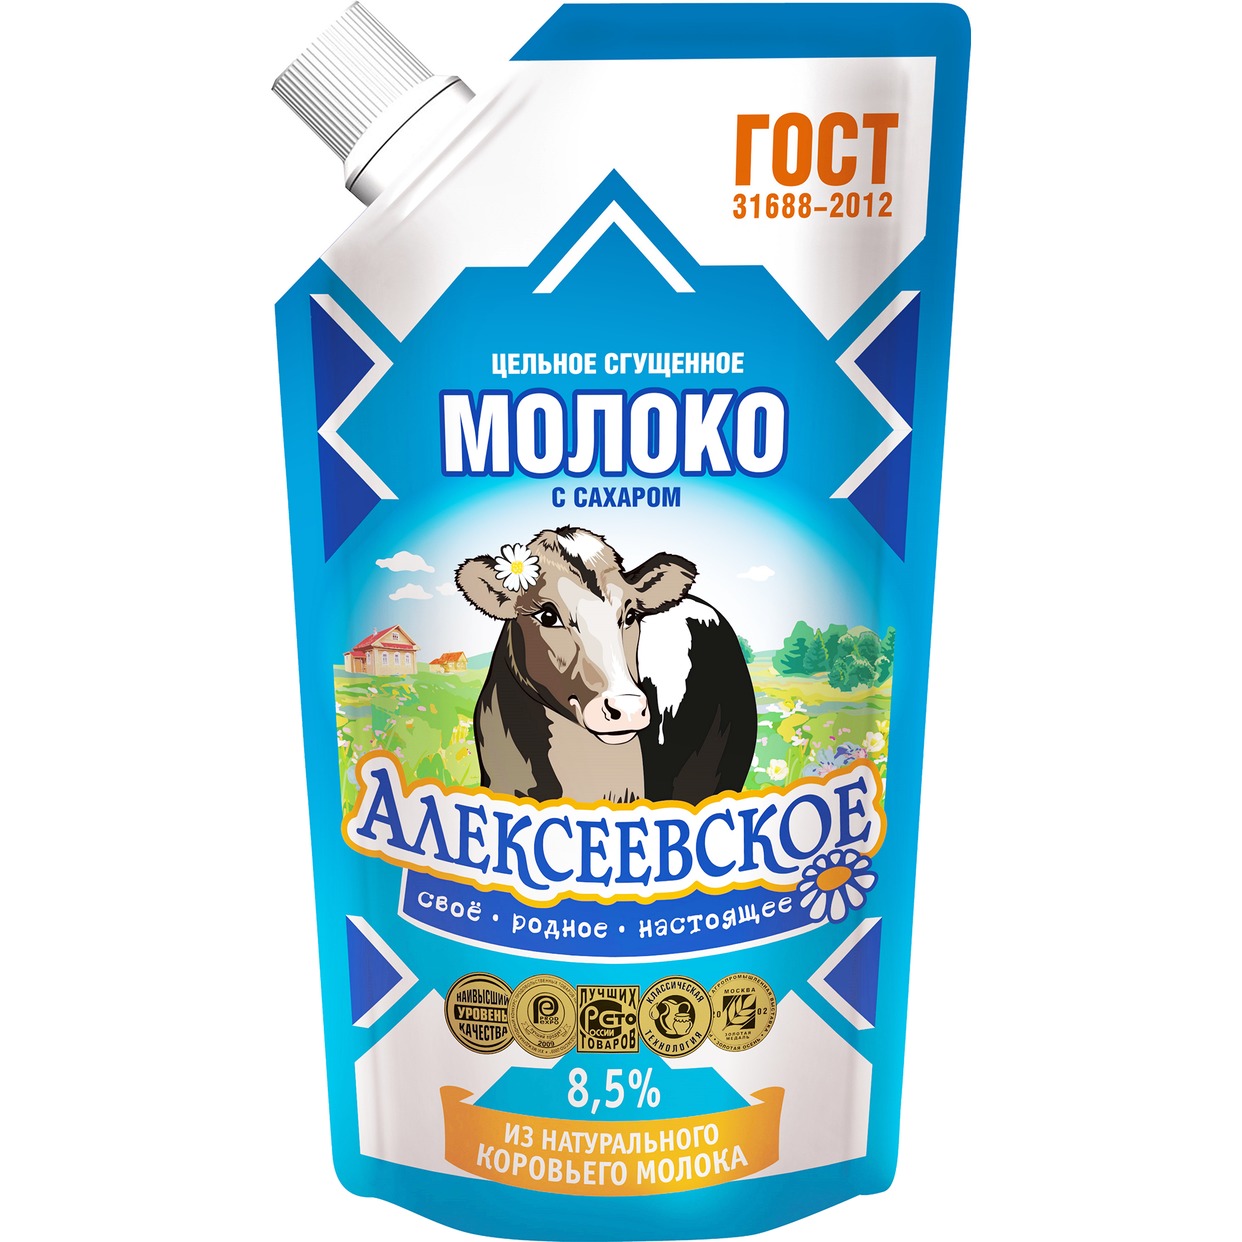 АЛЕКСЕЕВ.Молоко сгущ.цел.с/с 8,5%д/п650г по акции в Пятерочке